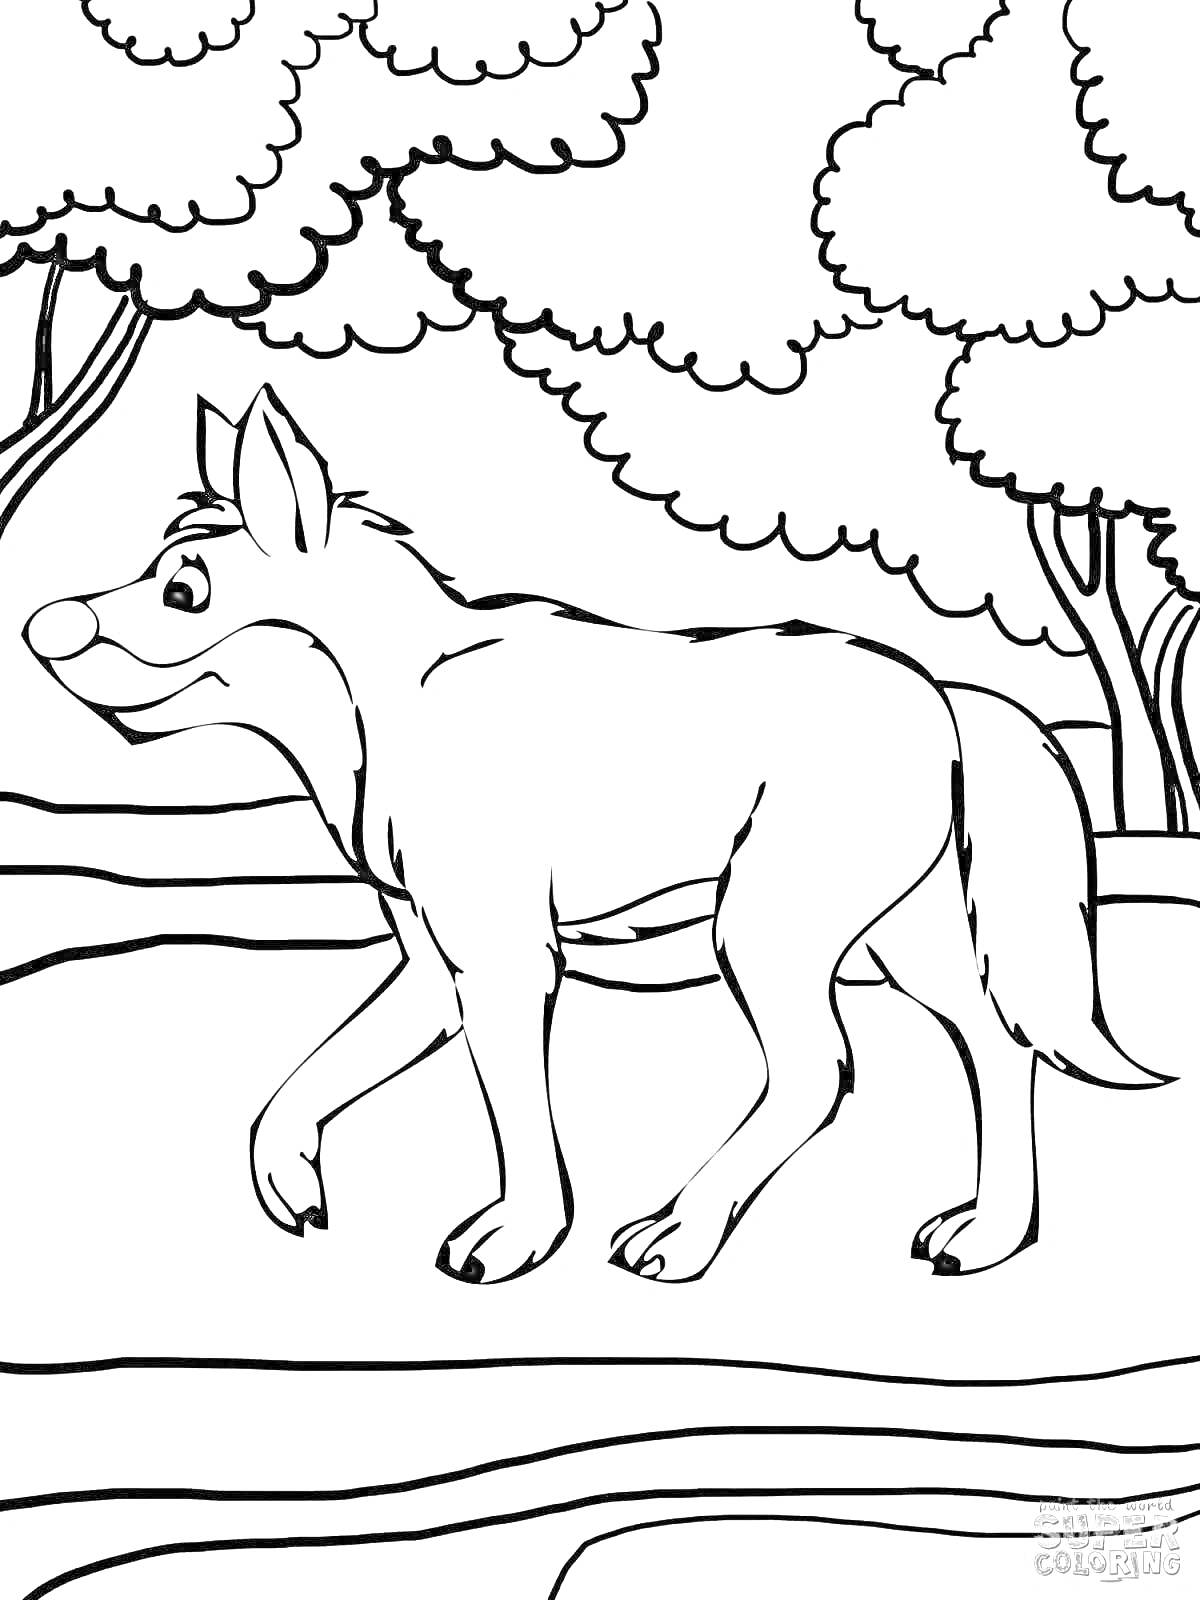 Раскраска Волк на прогулке зимой среди деревьев